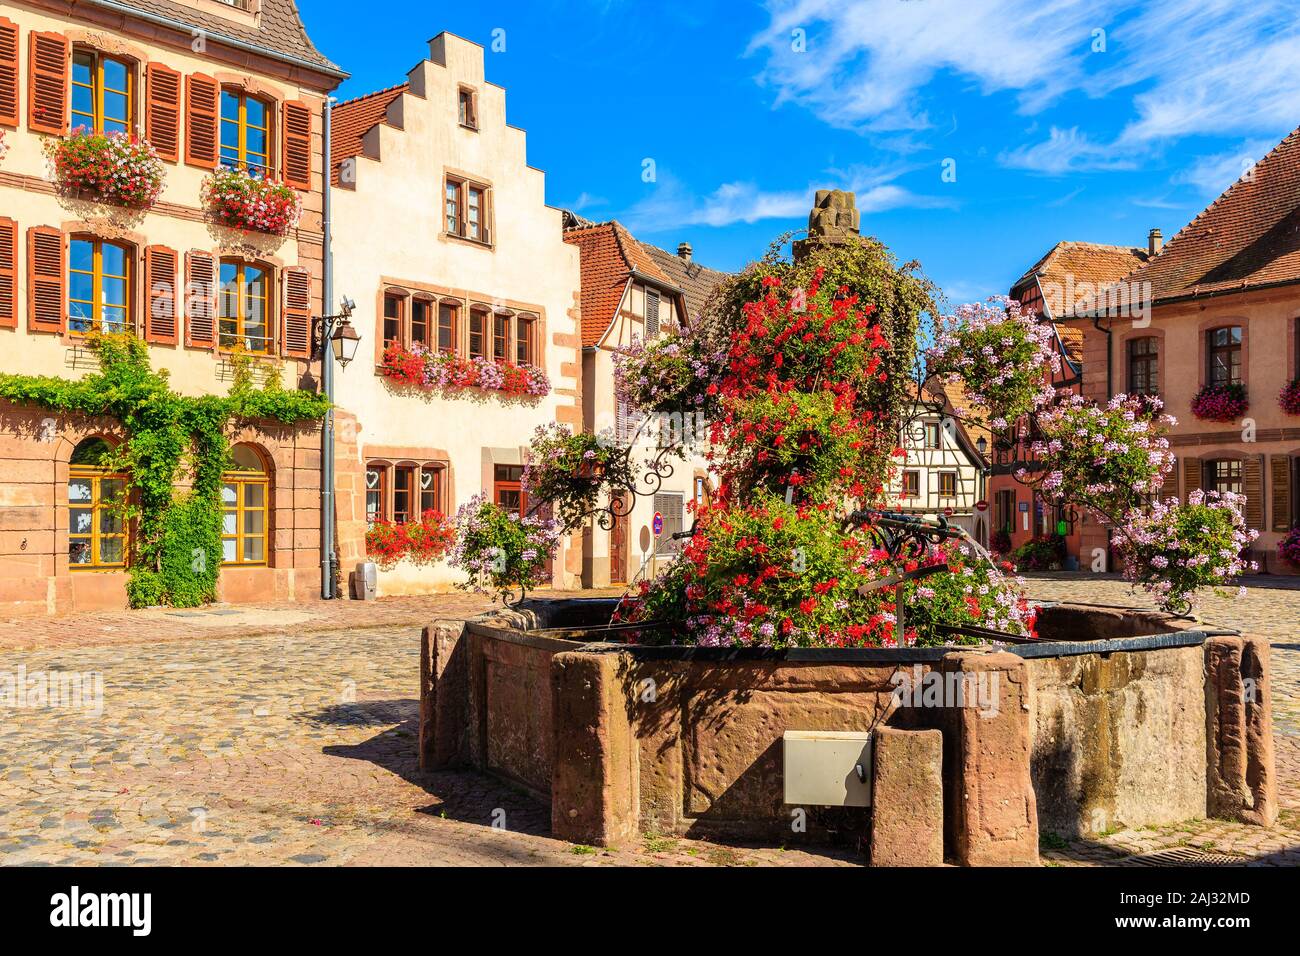 Case colorate sulla piazza di Bergheim villaggio sul vino Alsaziano percorso, Francia Foto Stock